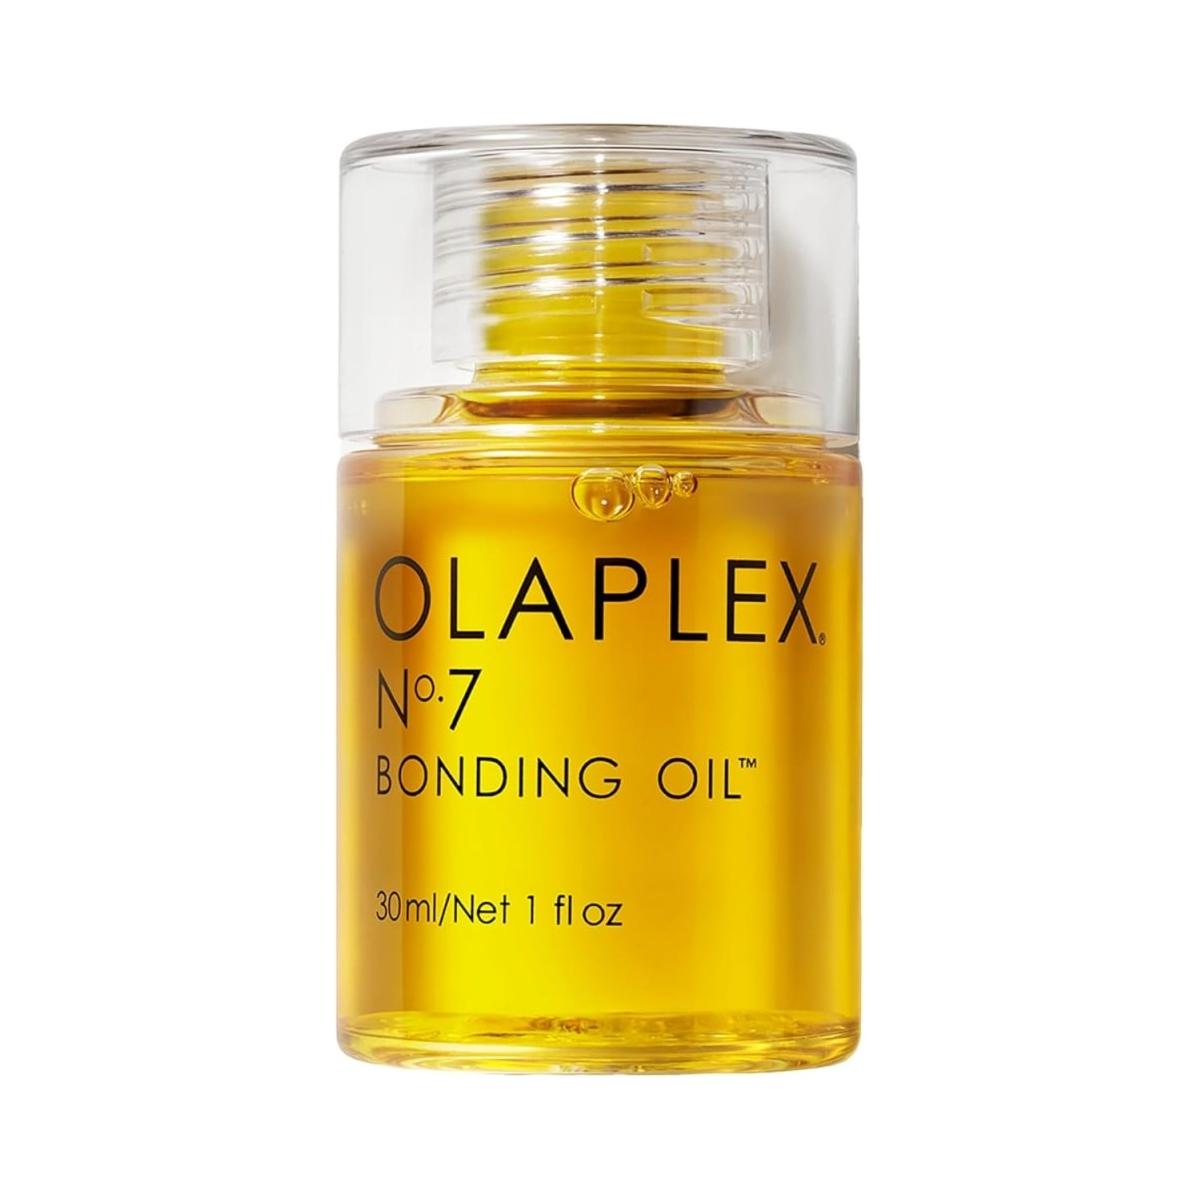 Olaplex No.7 Bonding Oil 30ml - Glam Global UK